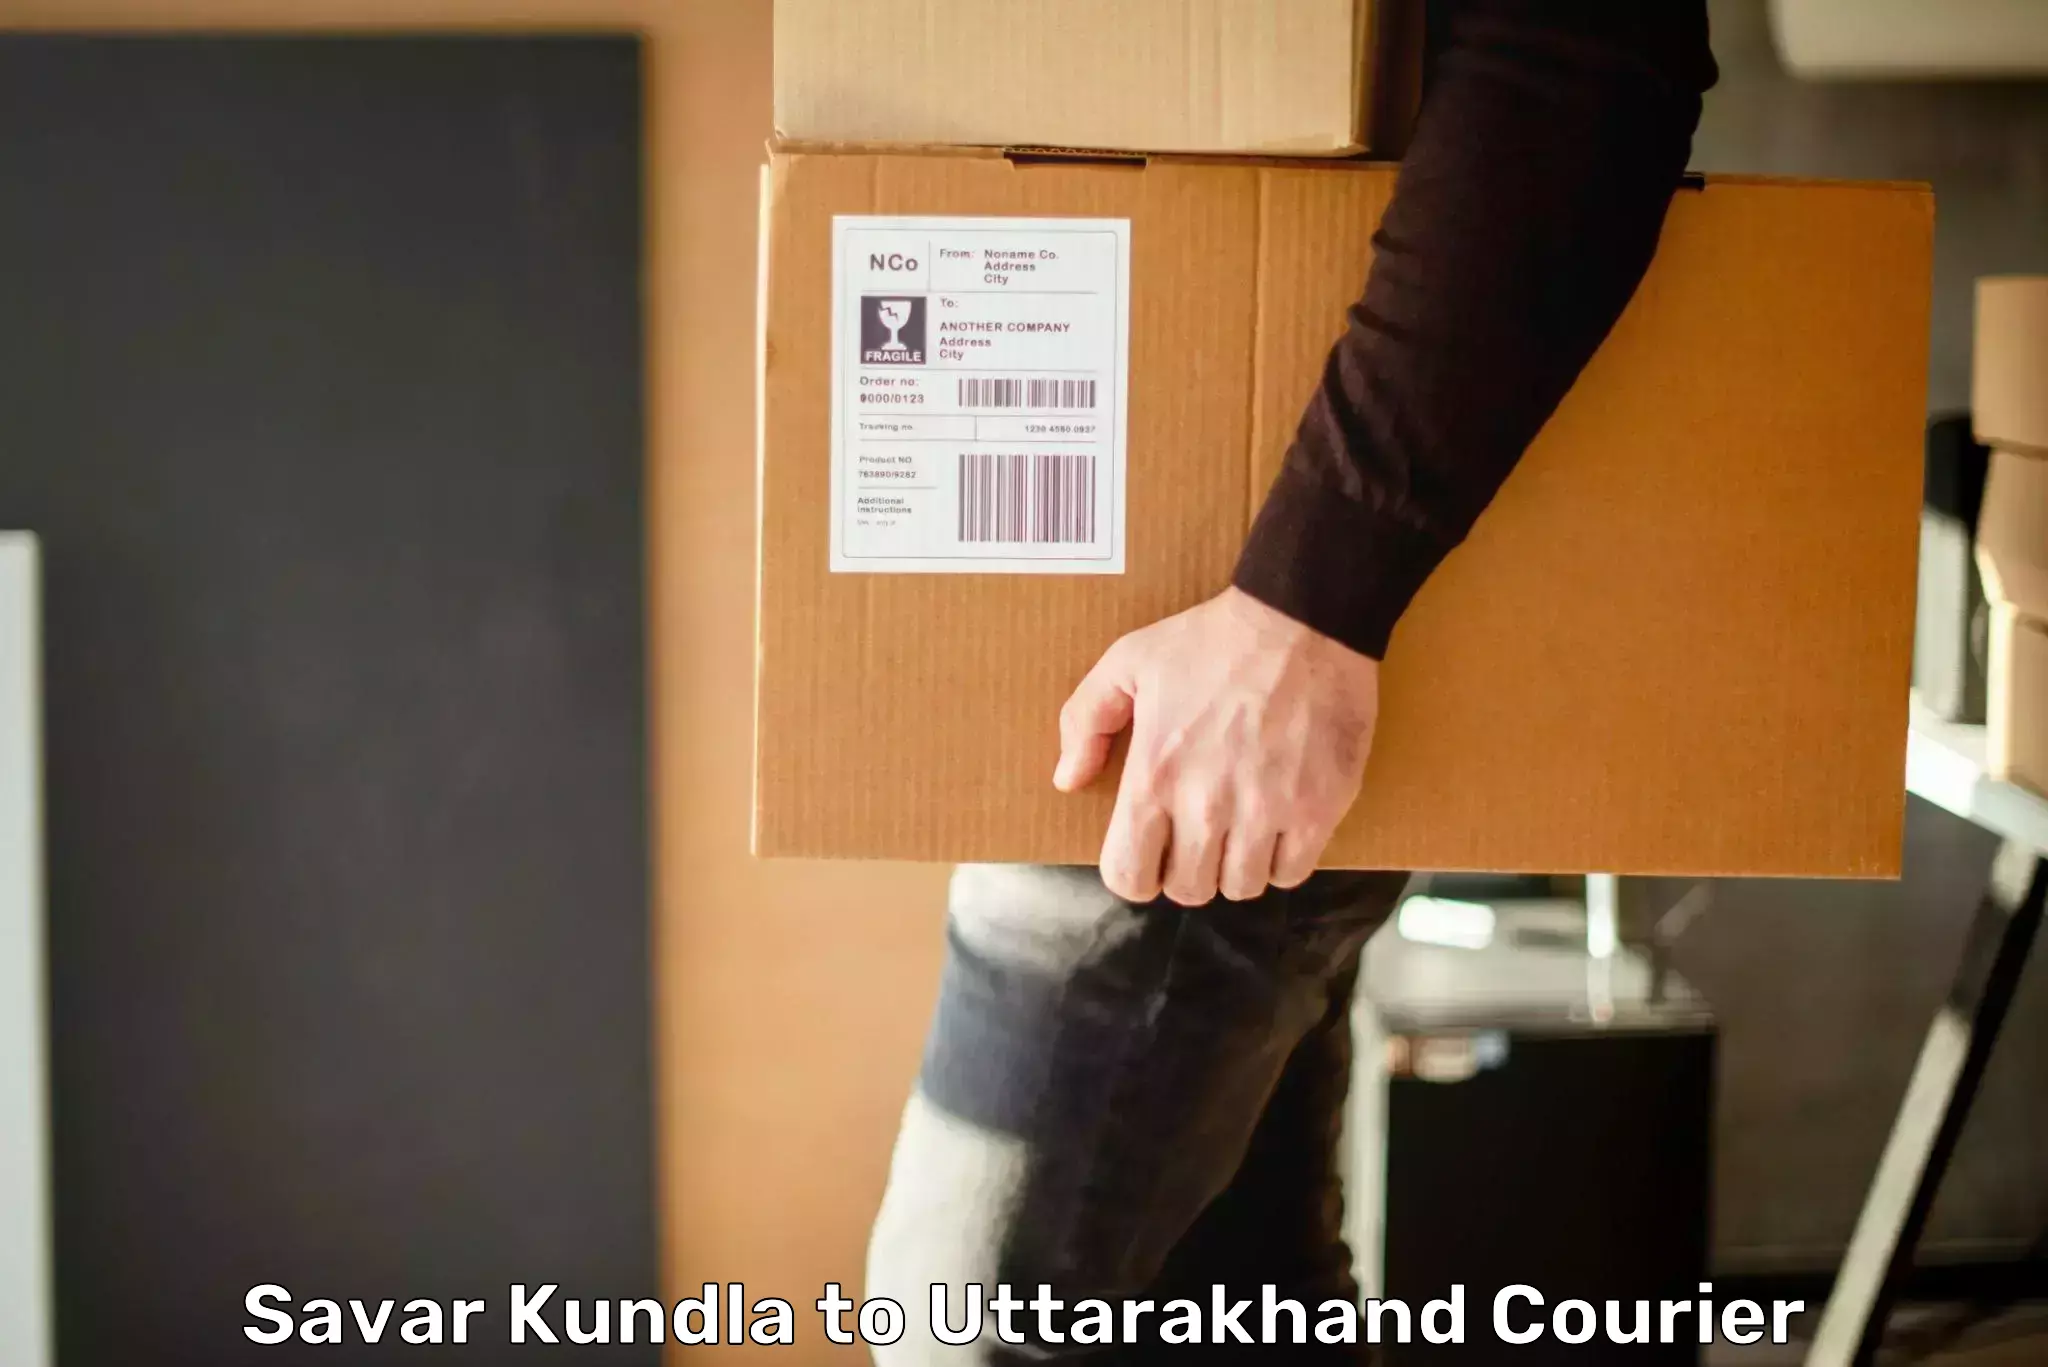 Bulk courier orders Savar Kundla to Tehri Garhwal